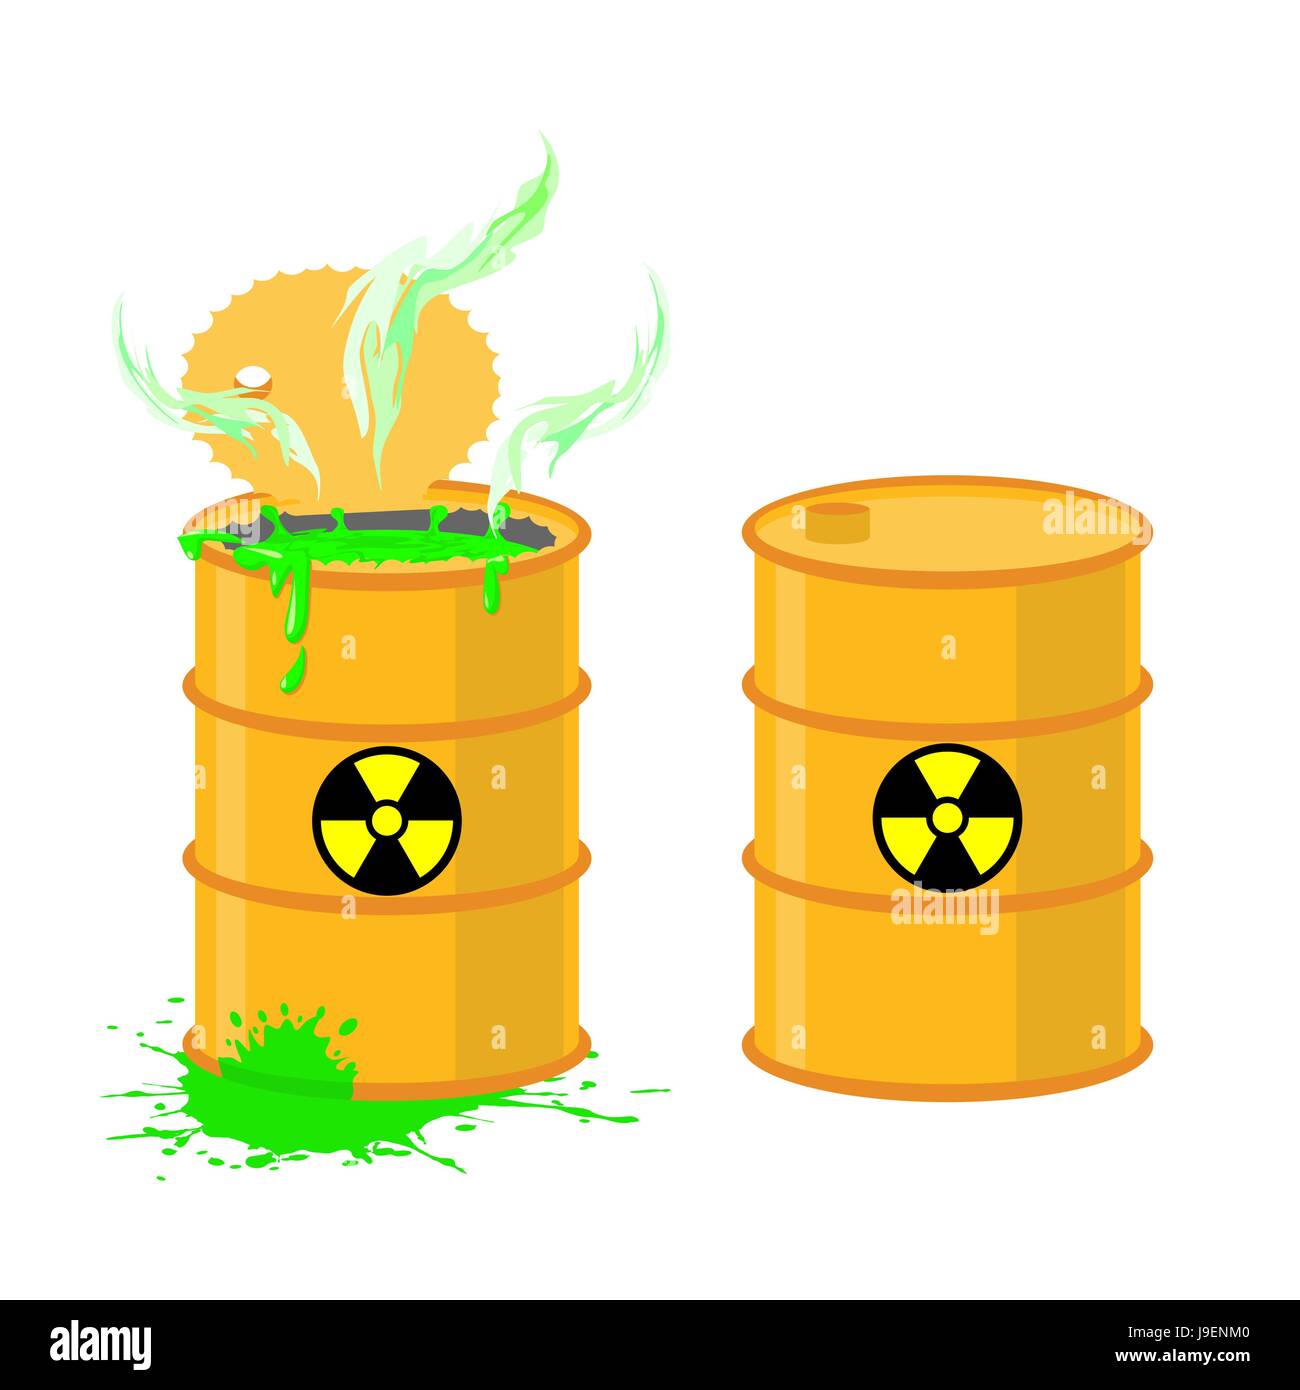 Barrel of acid. Vector illustration open drums with dangerous green liquid  Stock Vector Image & Art - Alamy